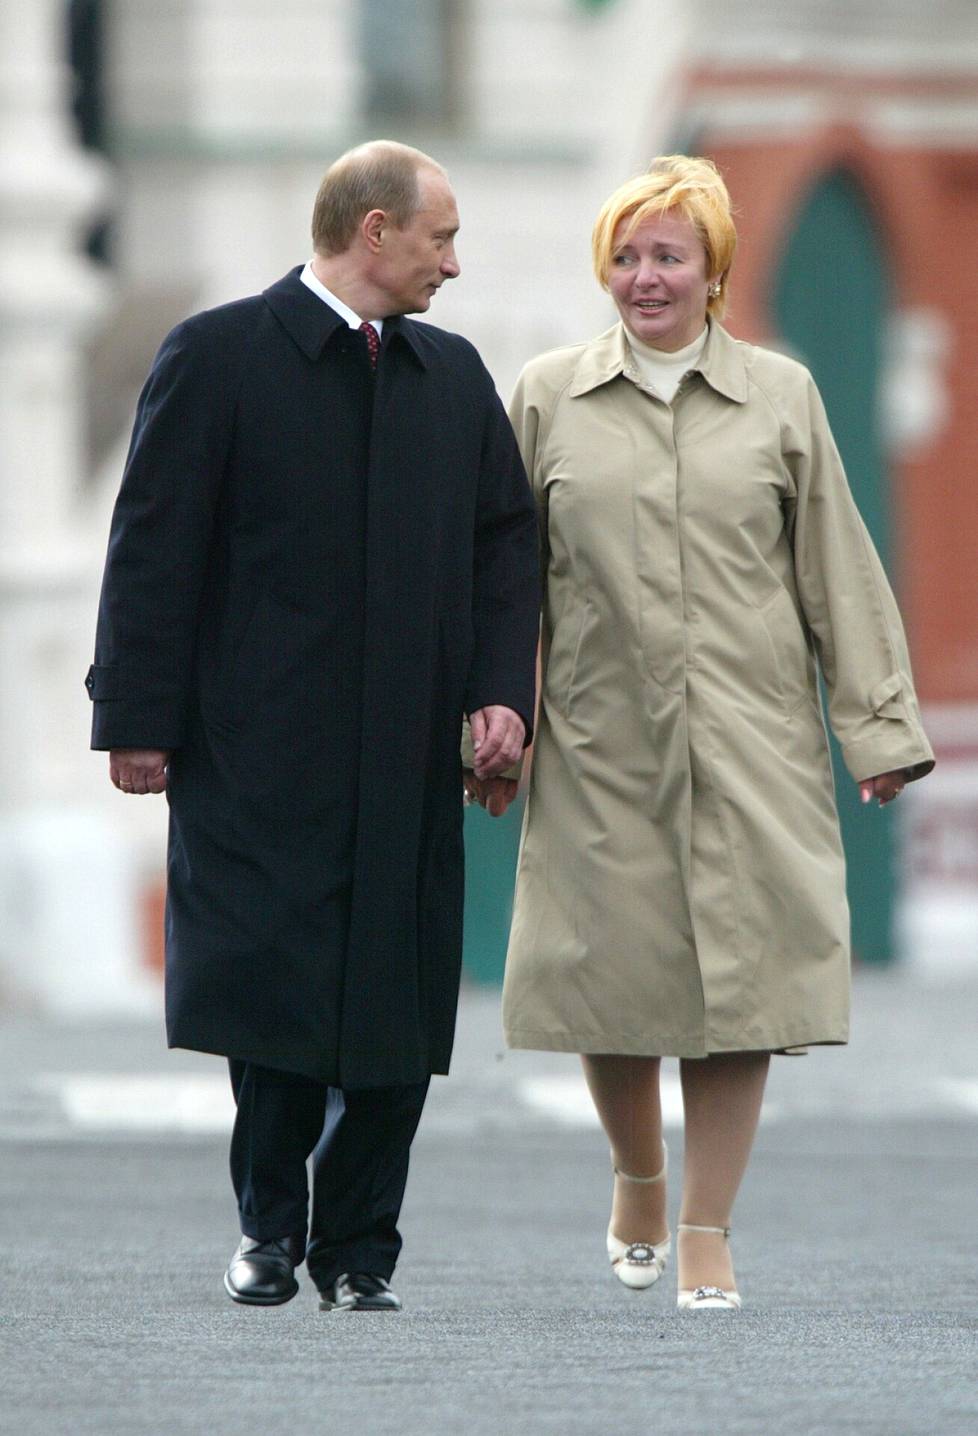 Presidentti Putinin ja vaimo-Ljudmilan erosta ilmoitettiin kesällä 2013. Yhteiskuva on keväältä 2005.